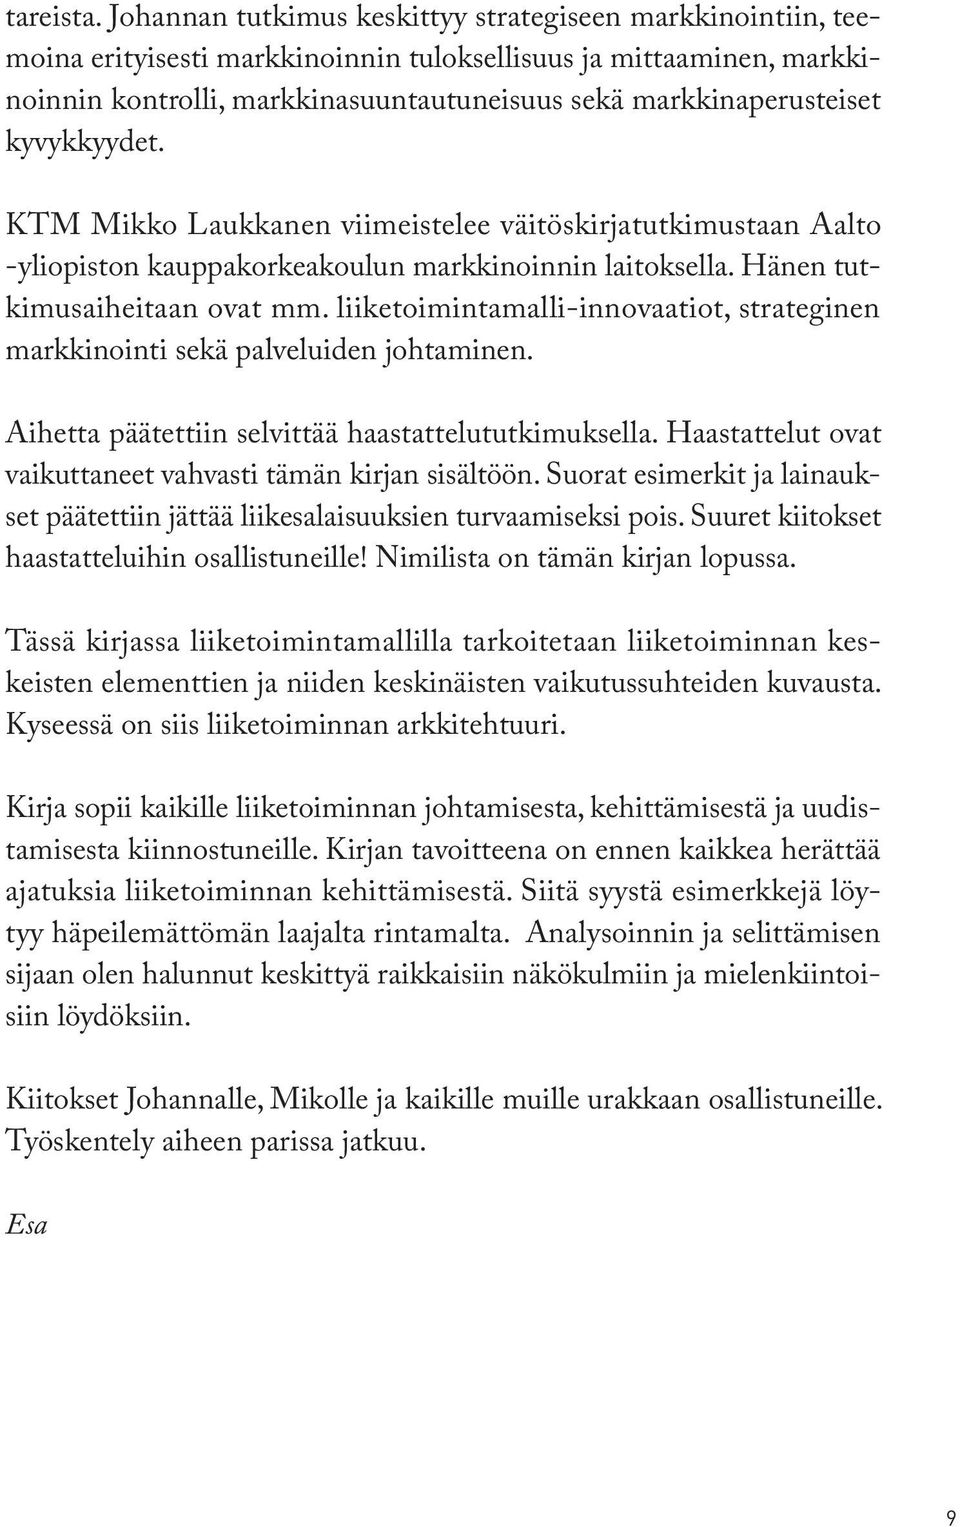 kyvykkyydet. KTM Mikko Laukkanen viimeistelee väitöskirjatutkimustaan Aalto -yliopiston kauppakorkeakoulun markkinoinnin laitoksella. Hänen tutkimusaiheitaan ovat mm.